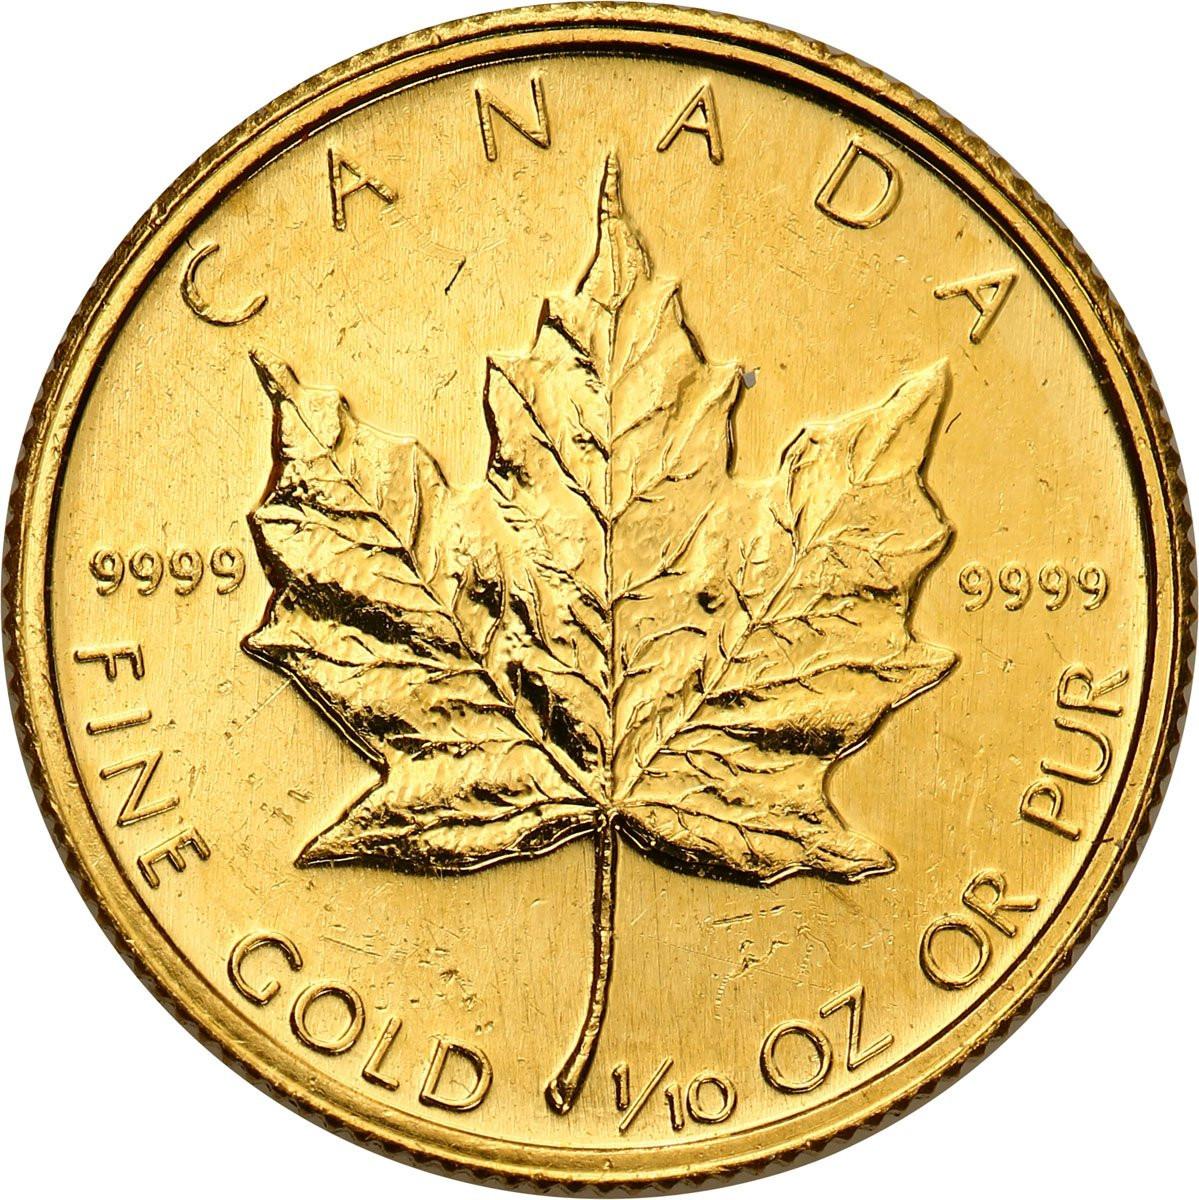 Kanada 5 dolarów 1989 liść klonowy 1/10 uncji złota